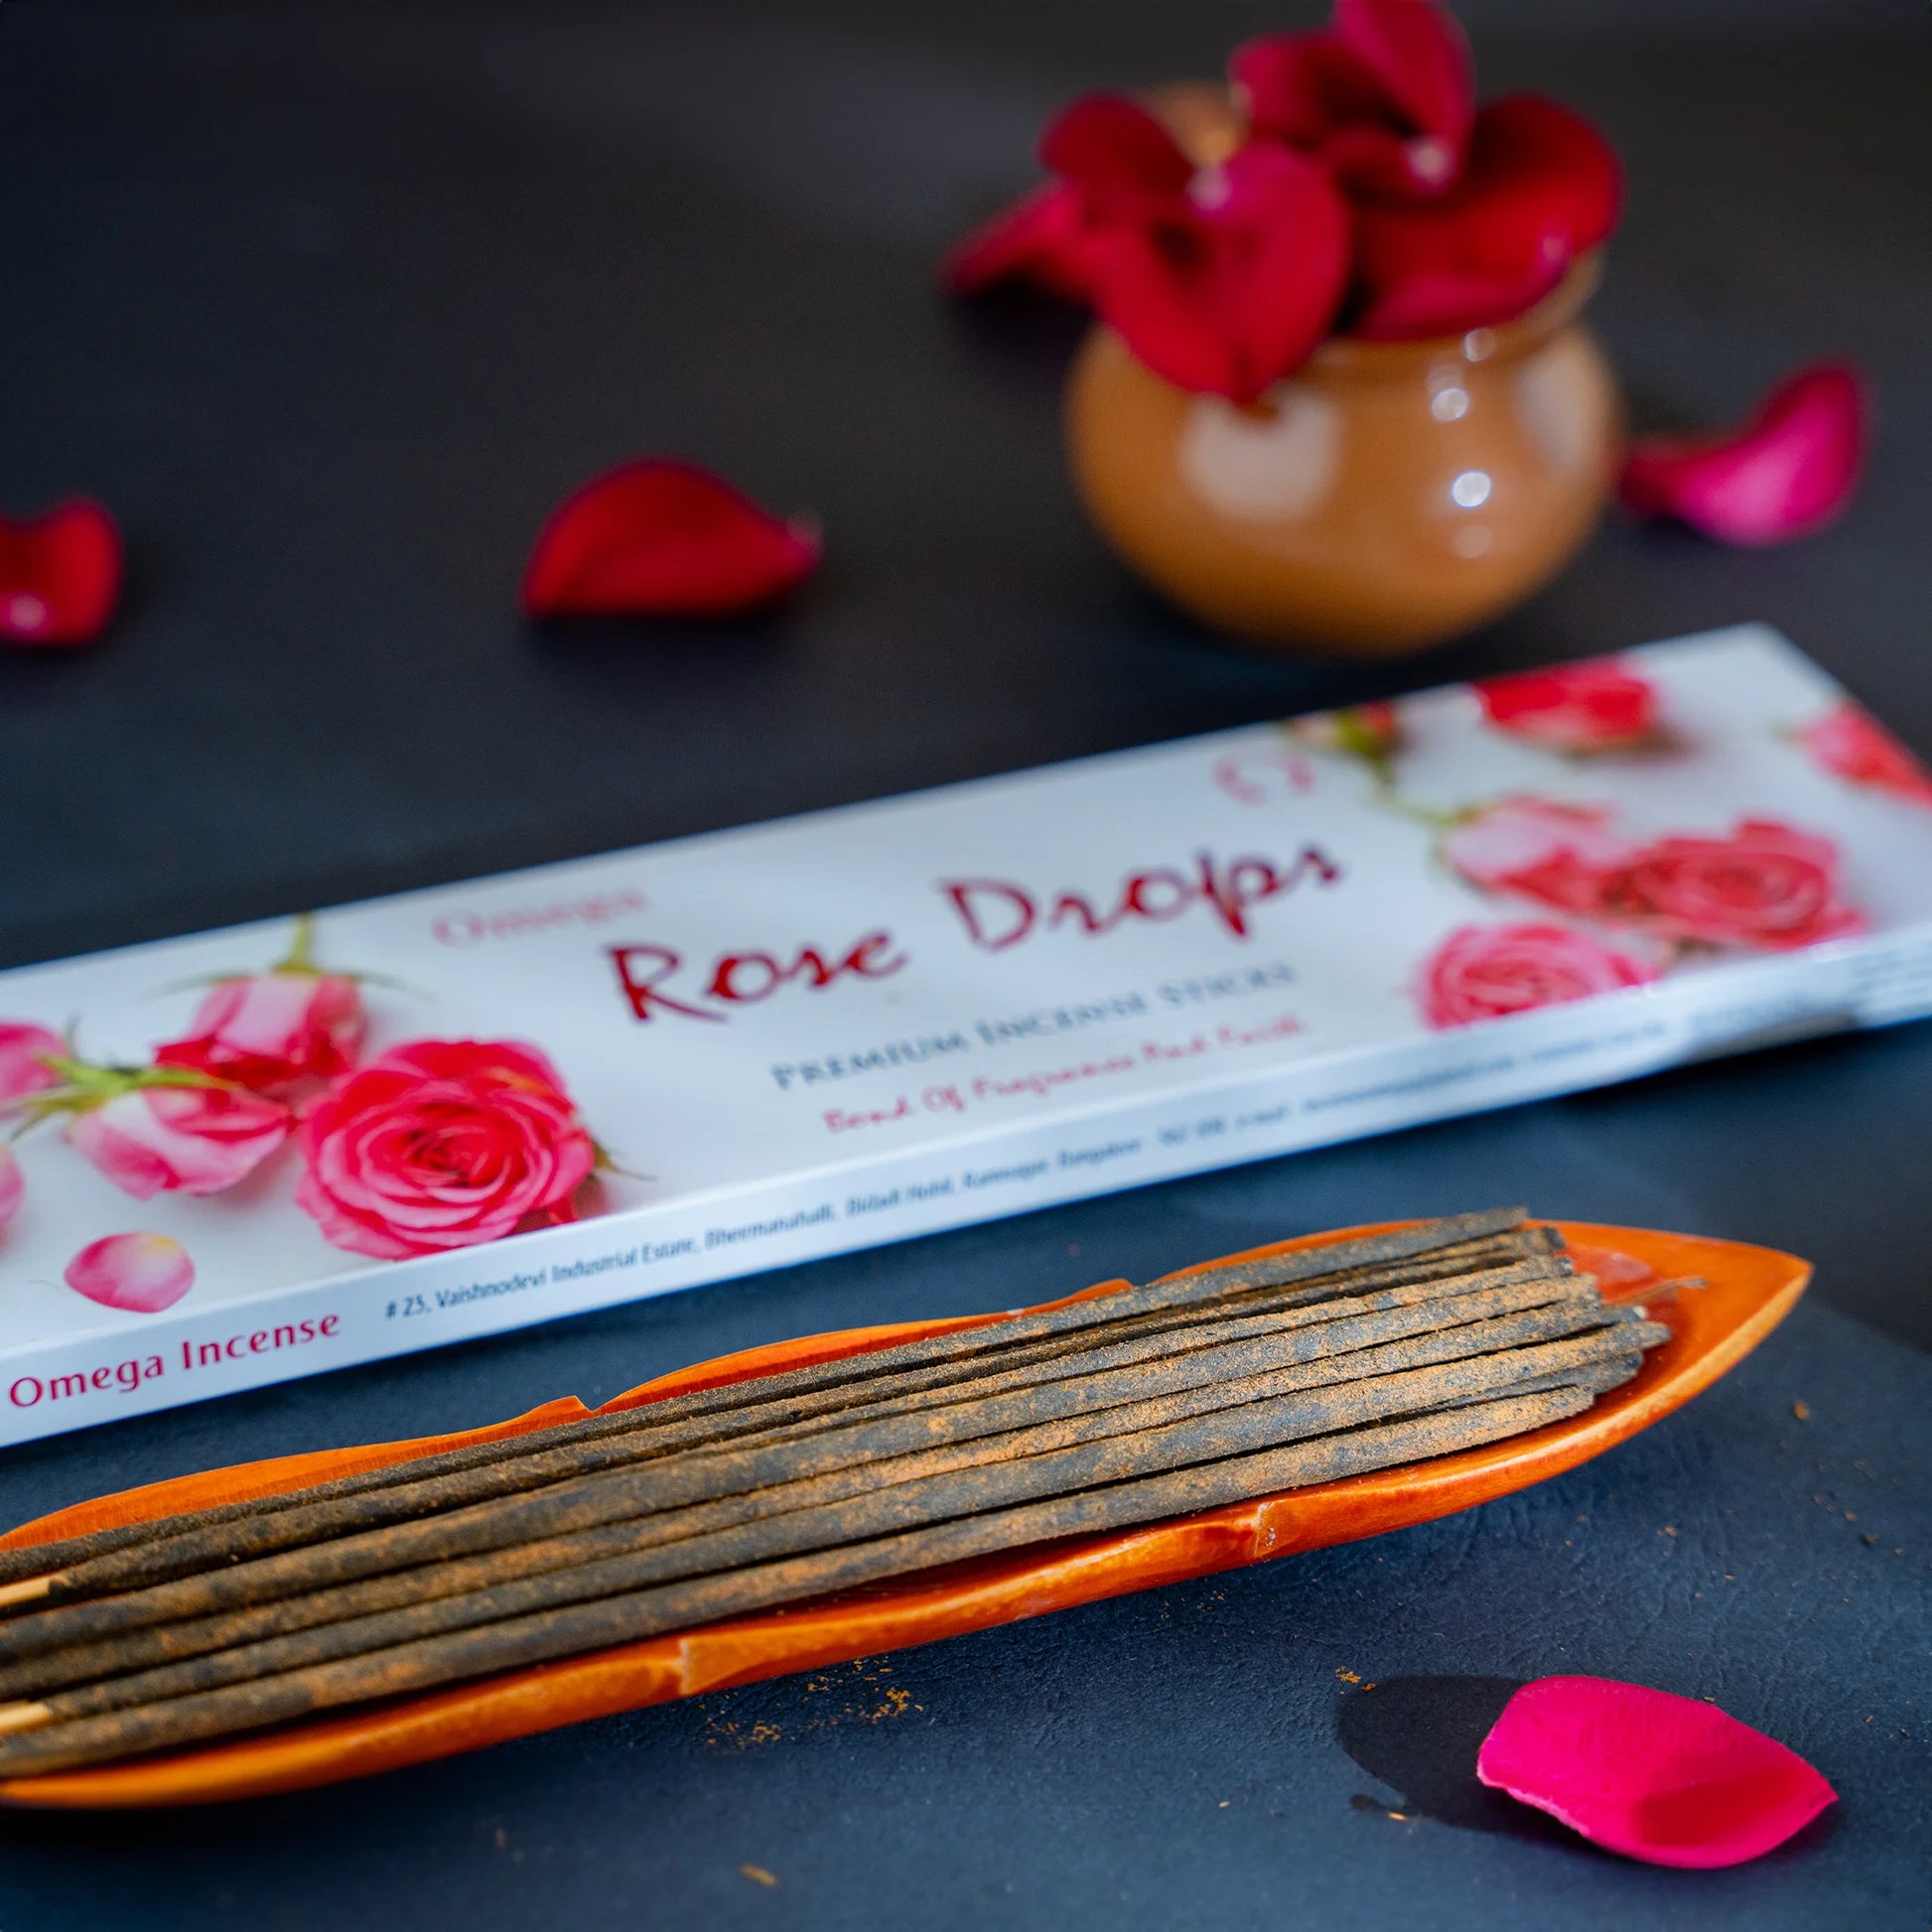 rose-drops-premium-incense-sticks